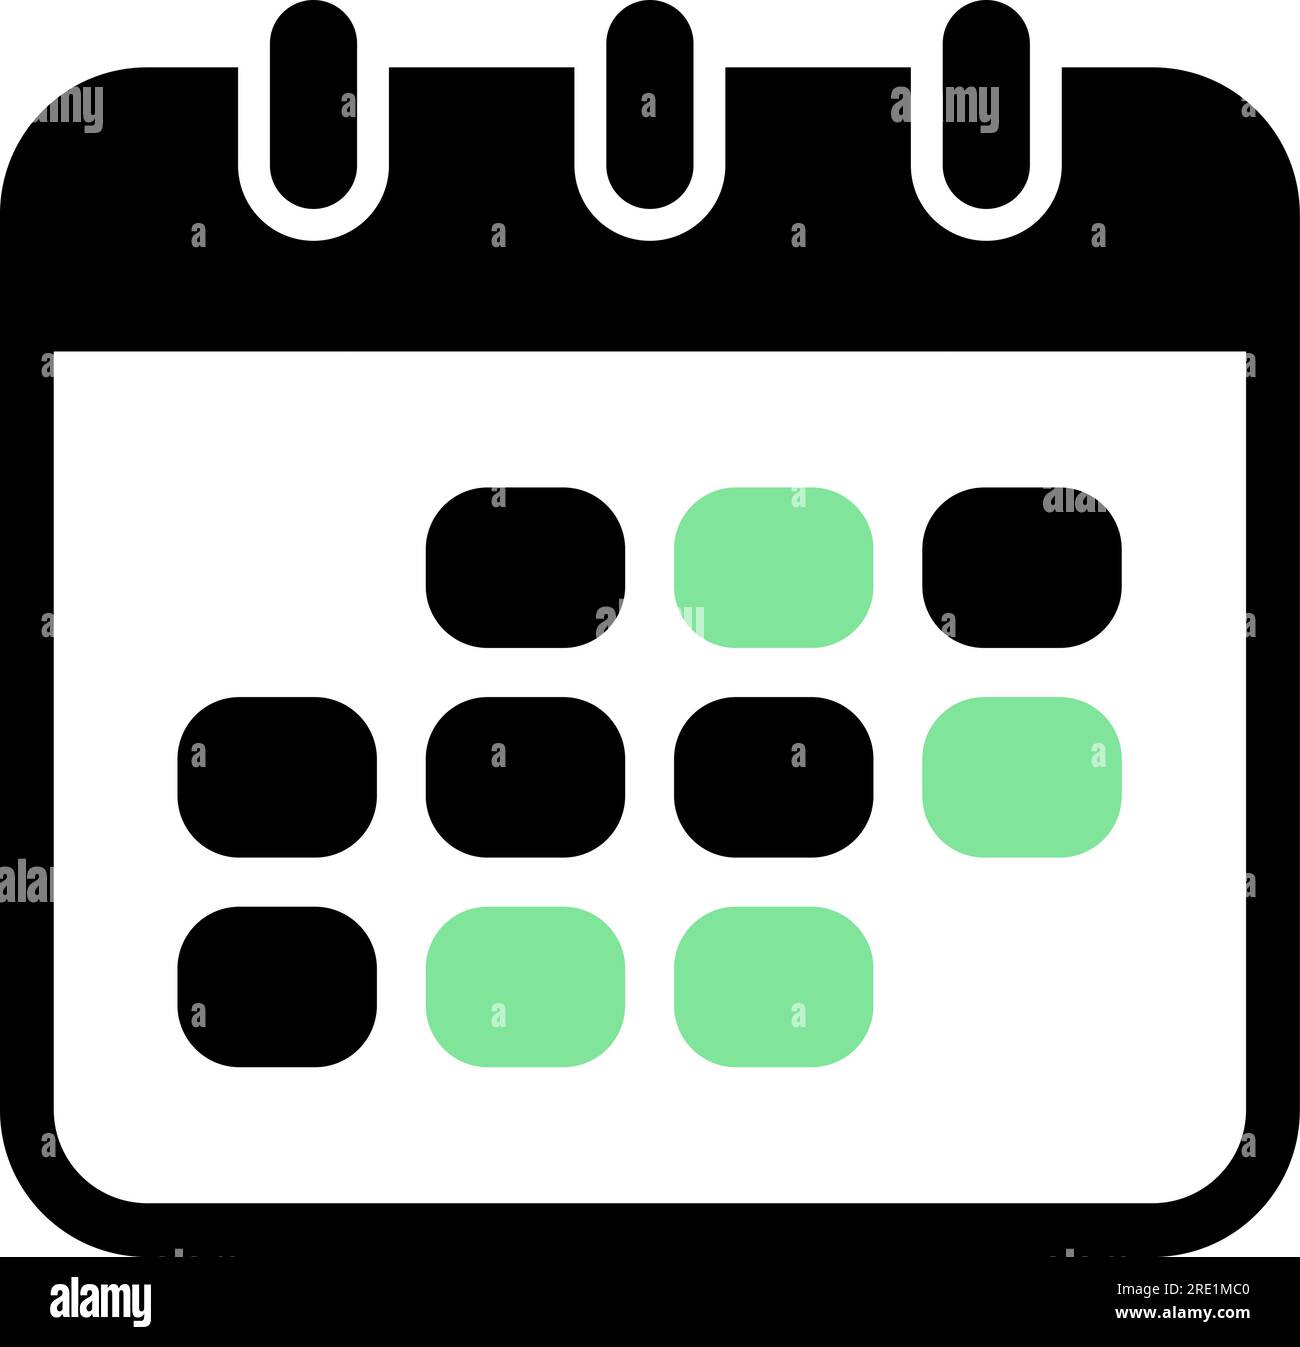 Icono plano del calendario desplegable como recordatorio de reunión Ilustración del Vector